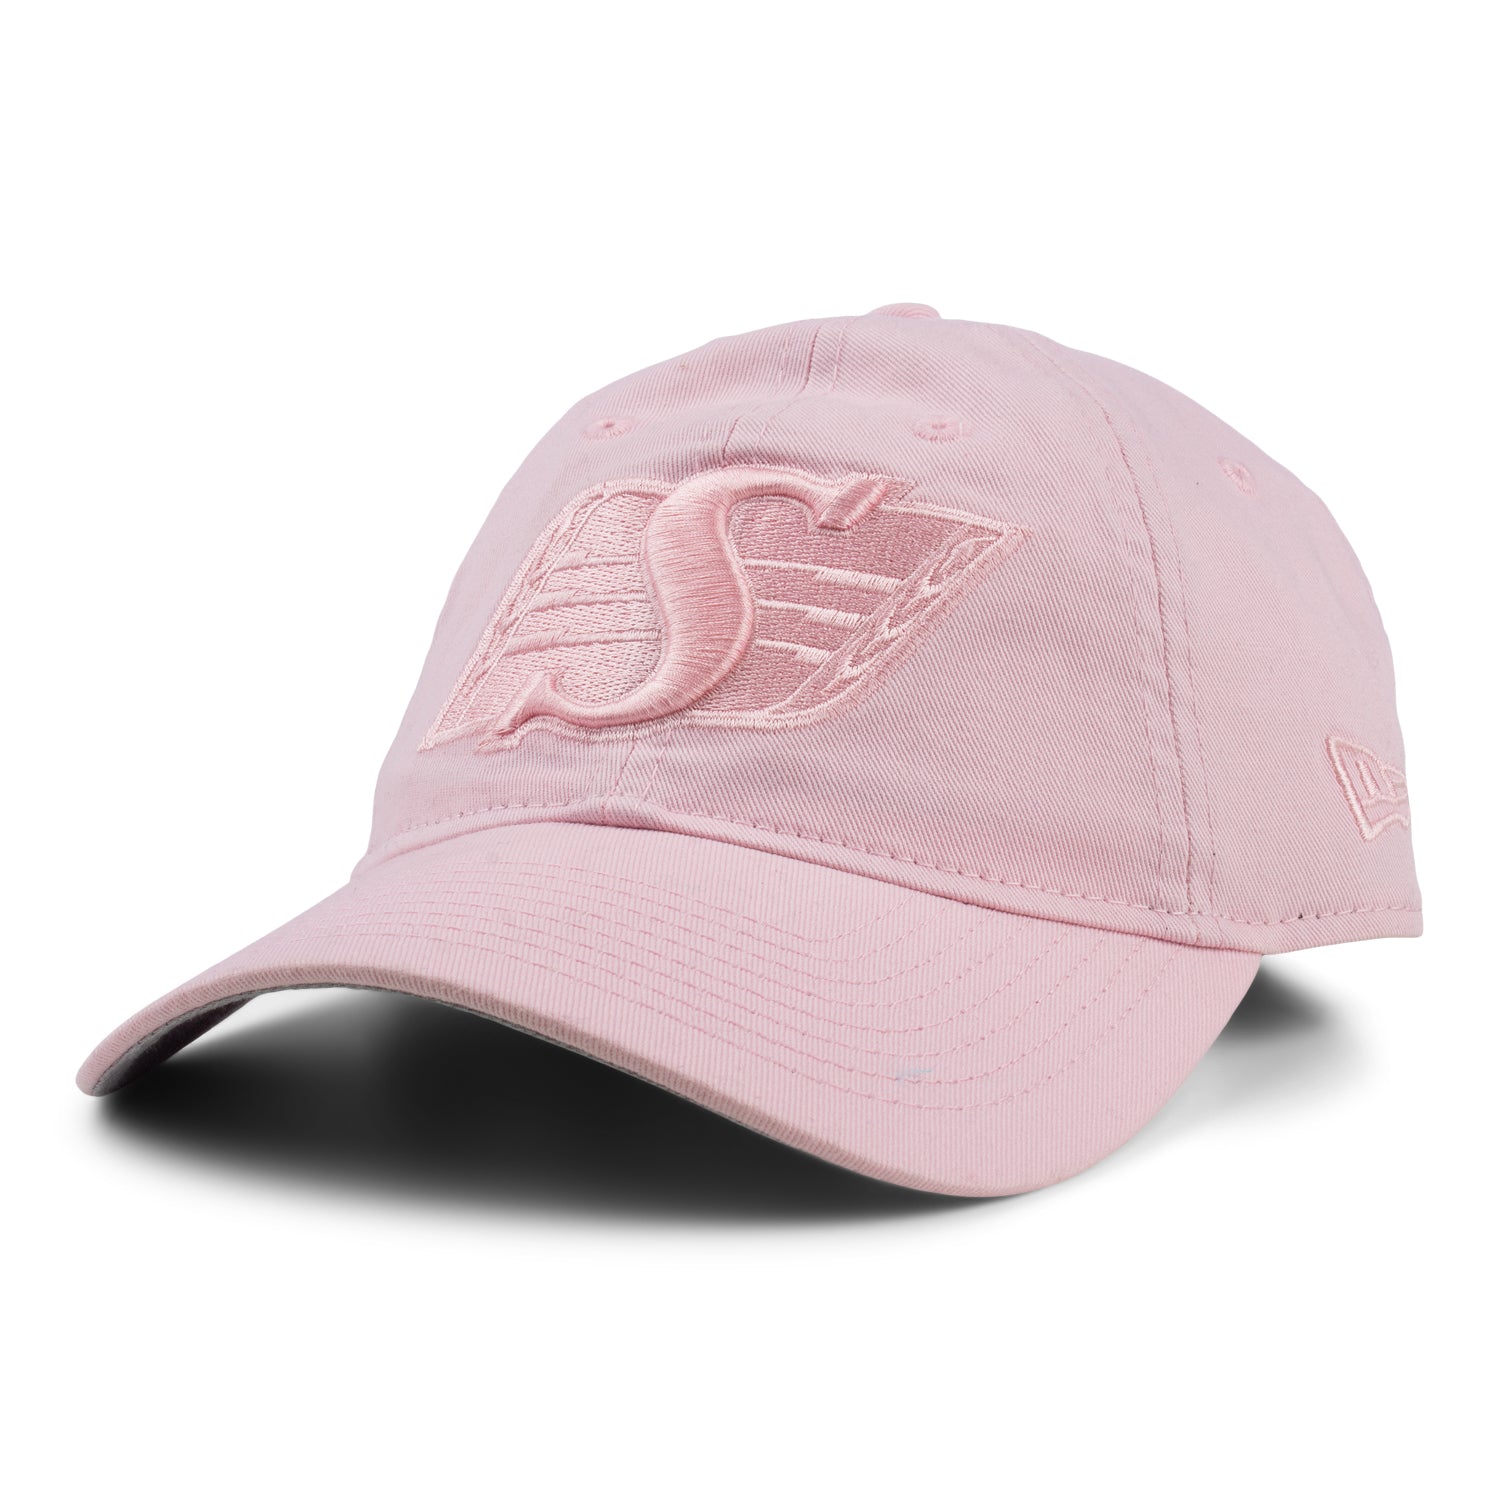 Ladies 920 Pink Cap